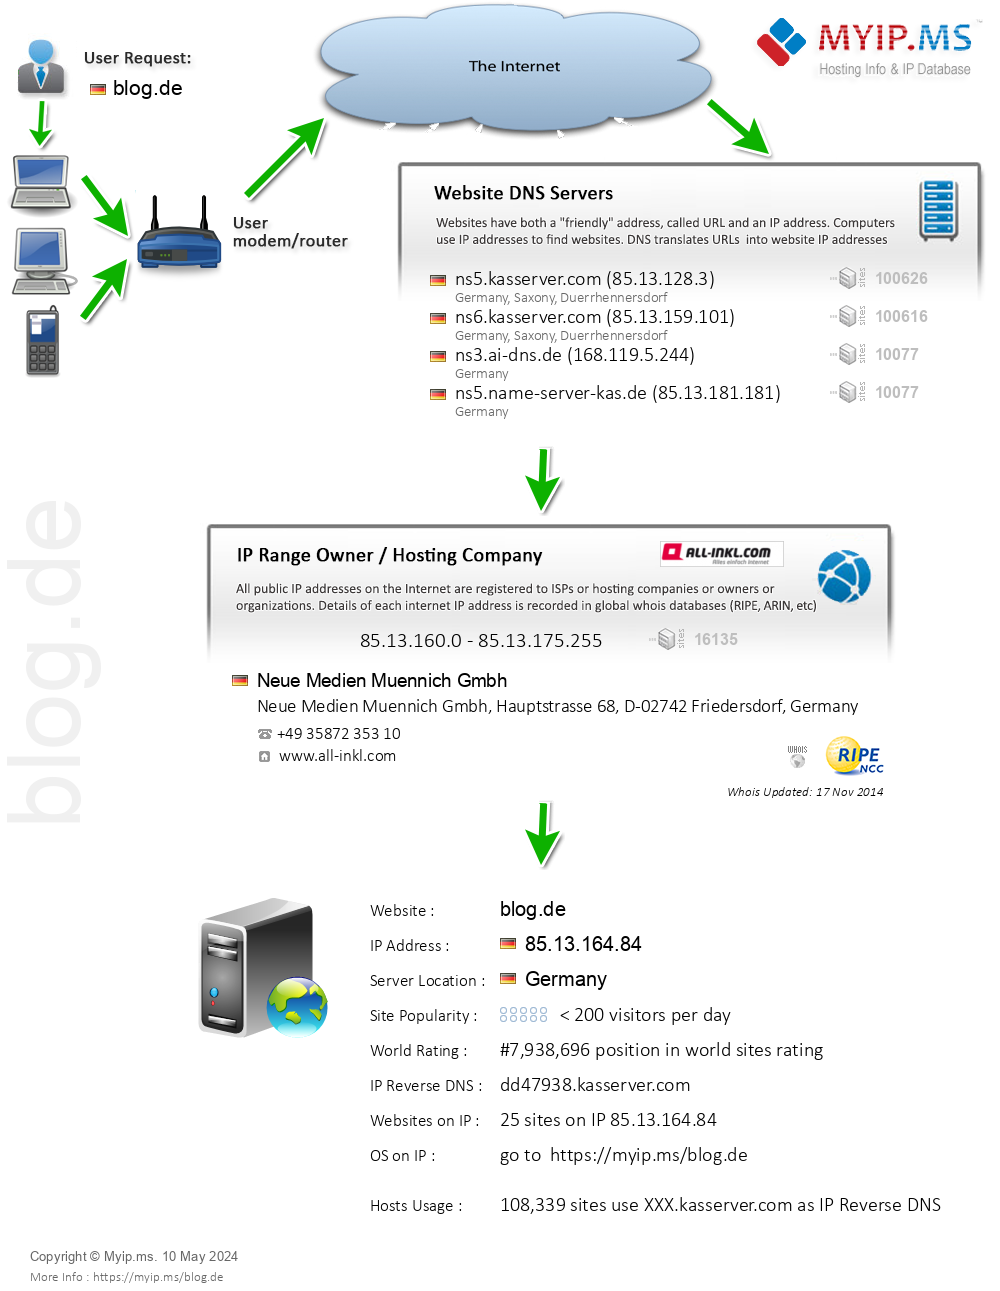 Blog.de - Website Hosting Visual IP Diagram